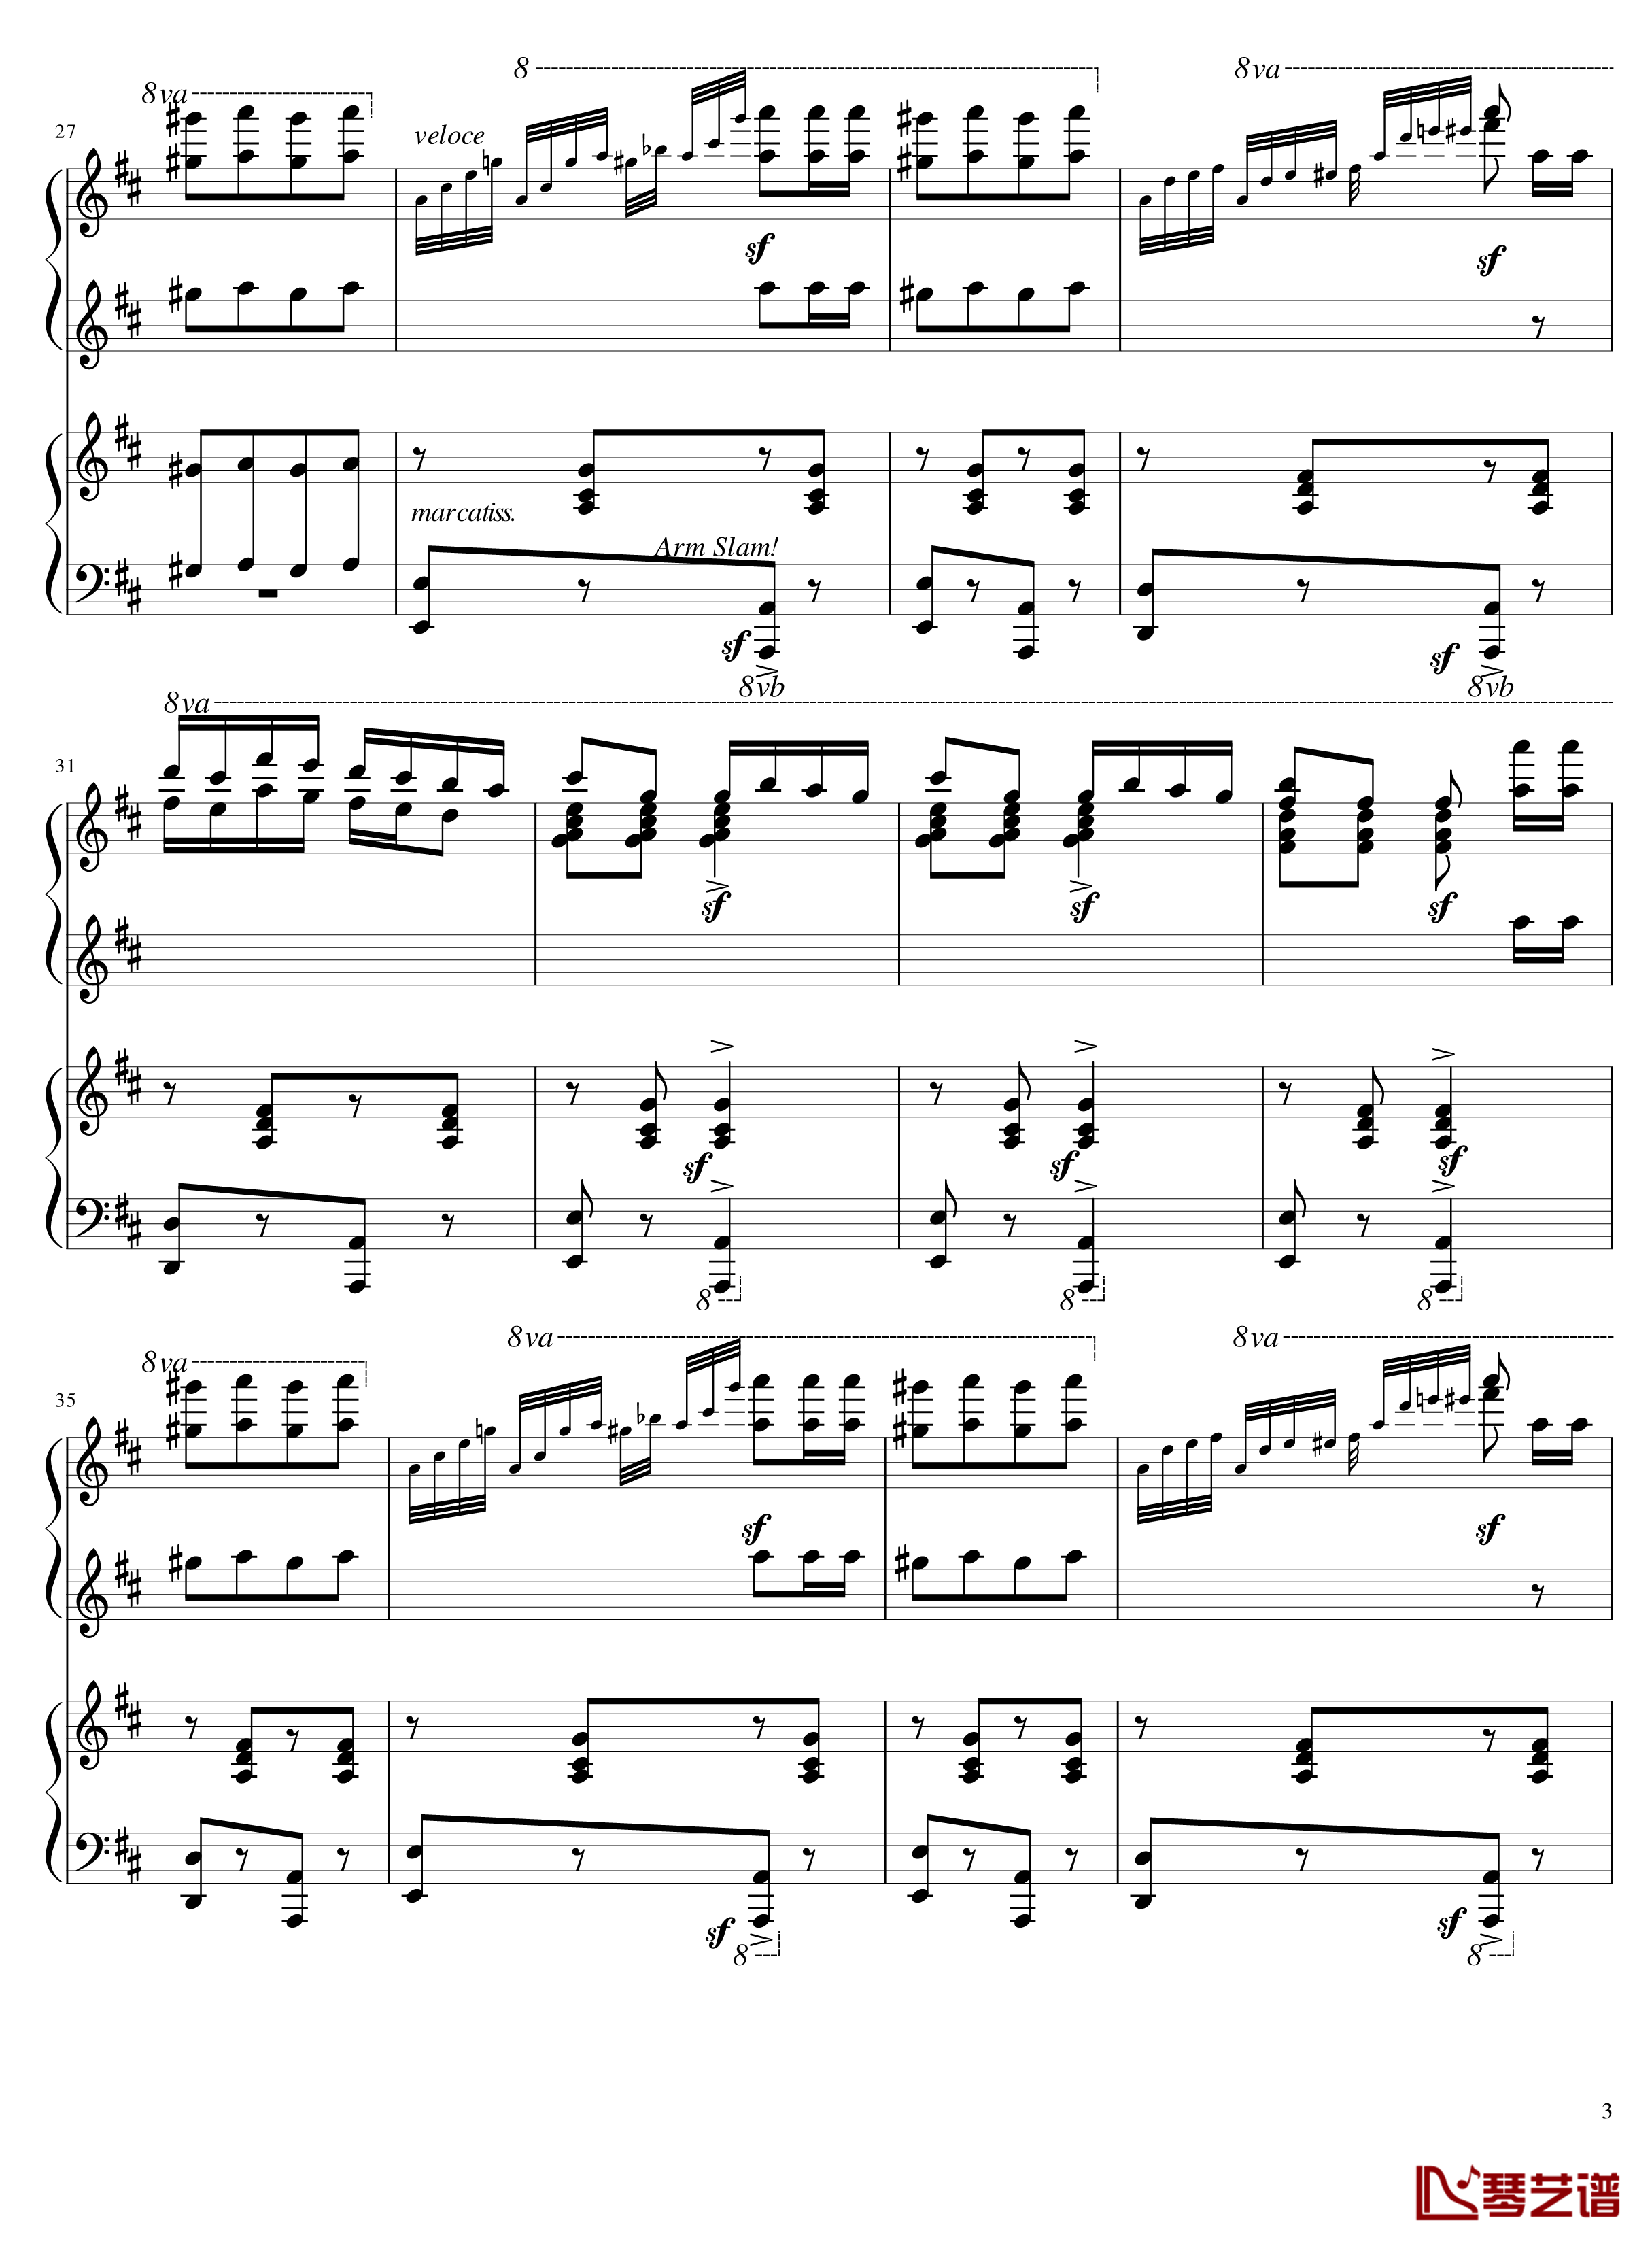 Italian Polka钢琴谱-意大利波尔卡-拉赫马尼若夫